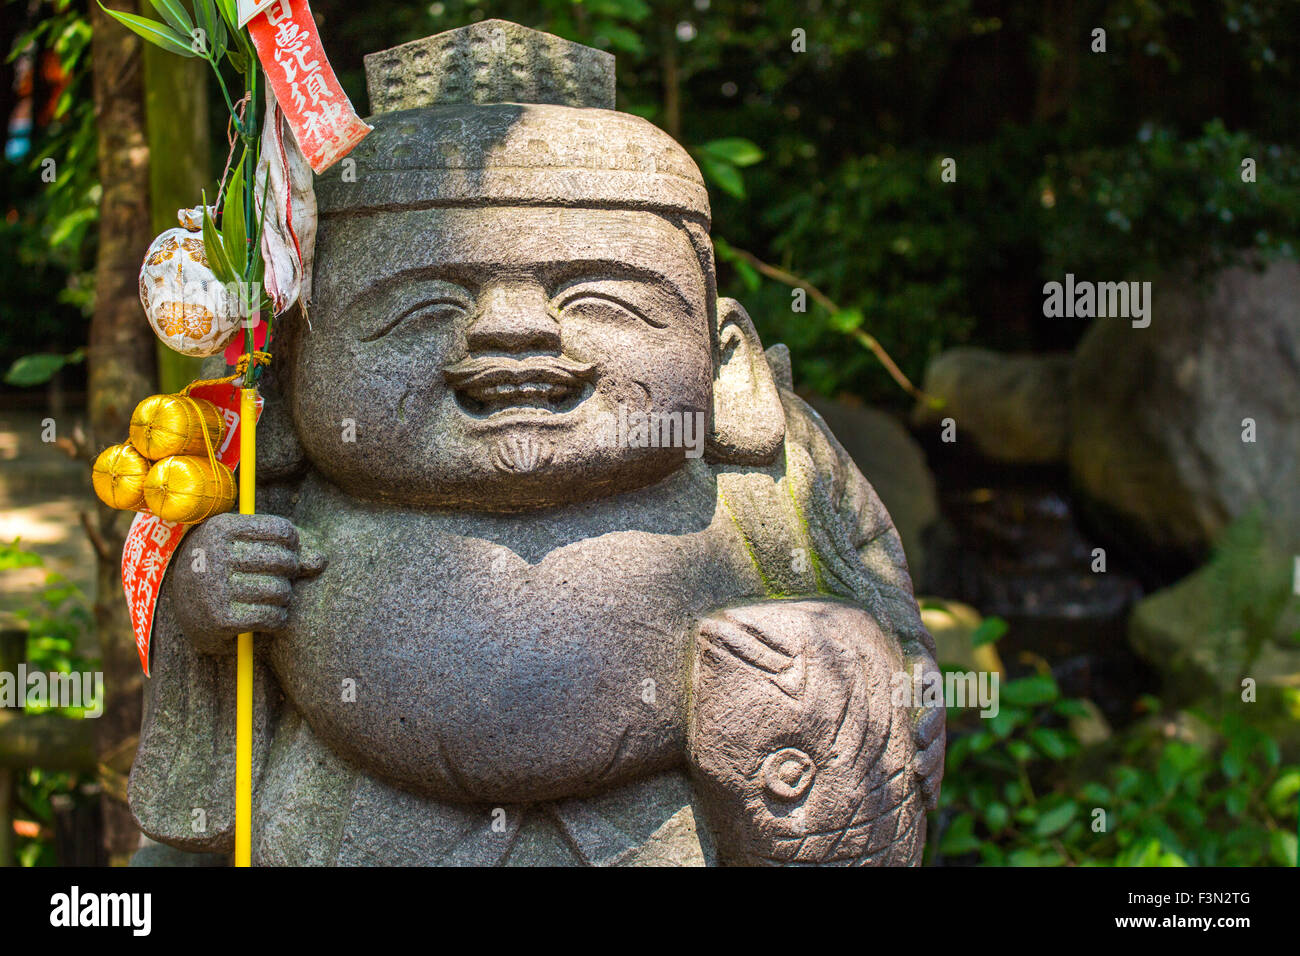 japanese stone idol of sumiyoshi shrine in fukuoka, hakata. It represent good luck Stock Photo